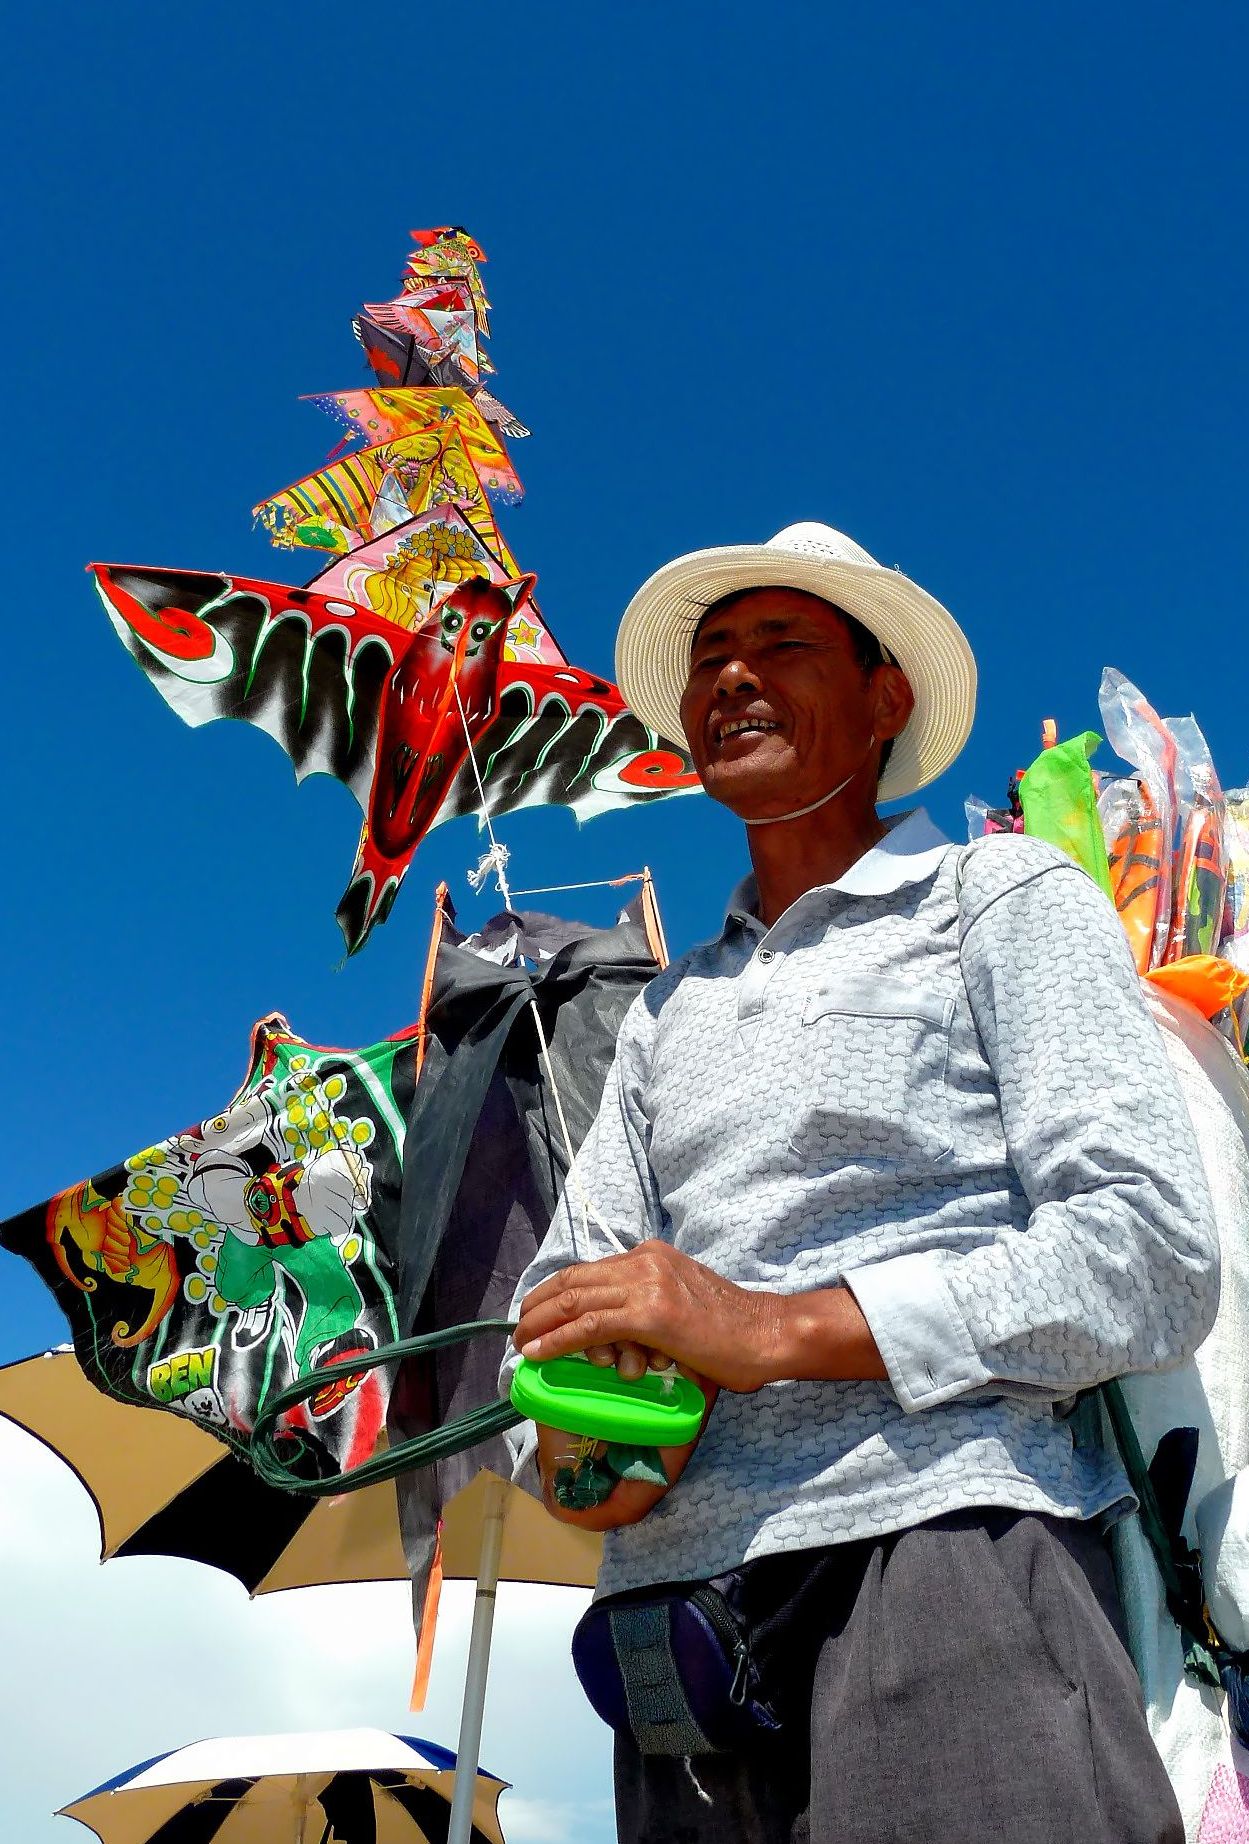 The seller of kites...